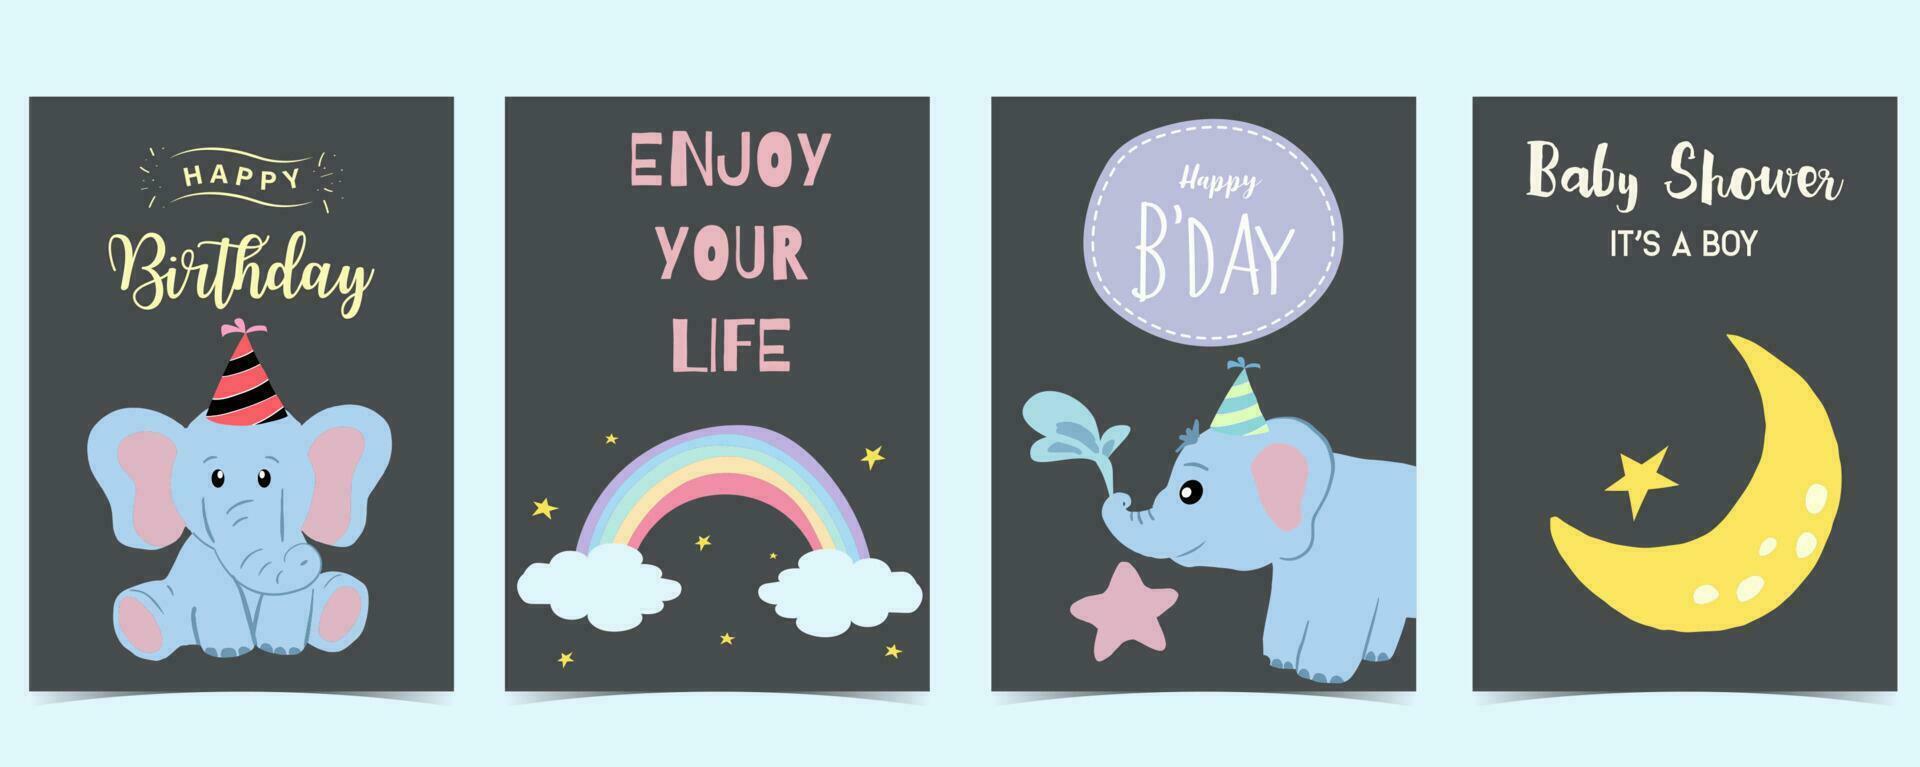 Baby elephant postcard with cloud, rainbow, moon for birthday postcard vector